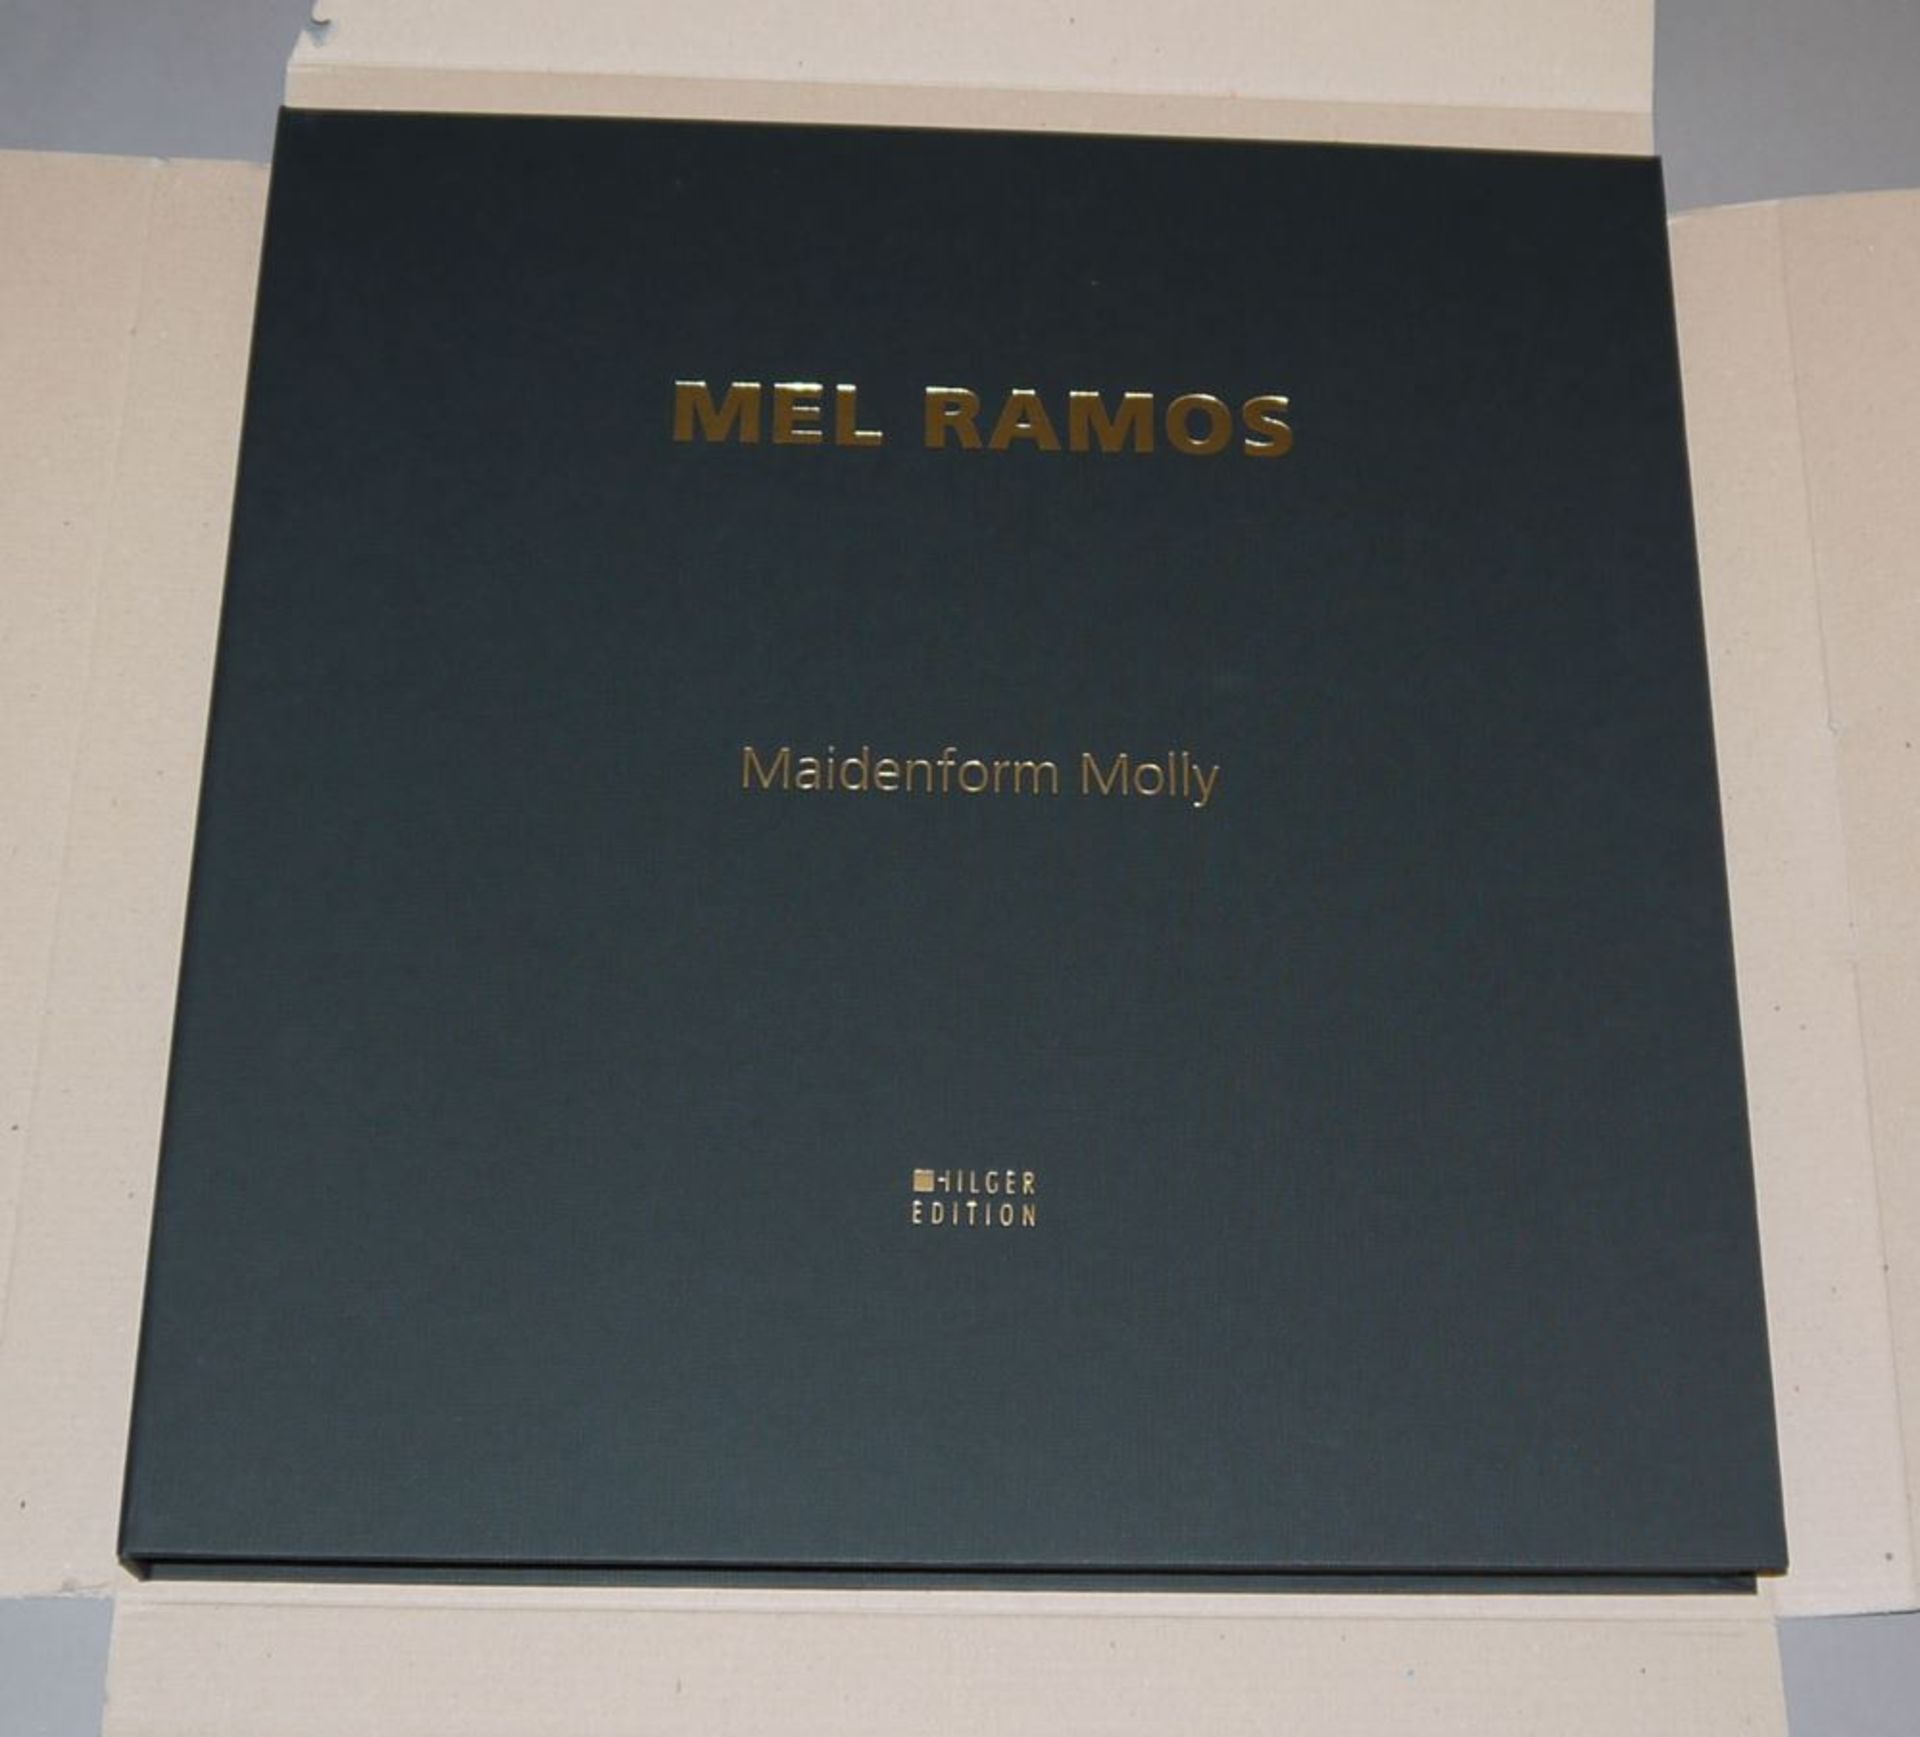 Mel Ramos, "Maidenform Molly", Lithographisches Relief von 2014 in Kassette, sign., originalverpack - Bild 3 aus 4